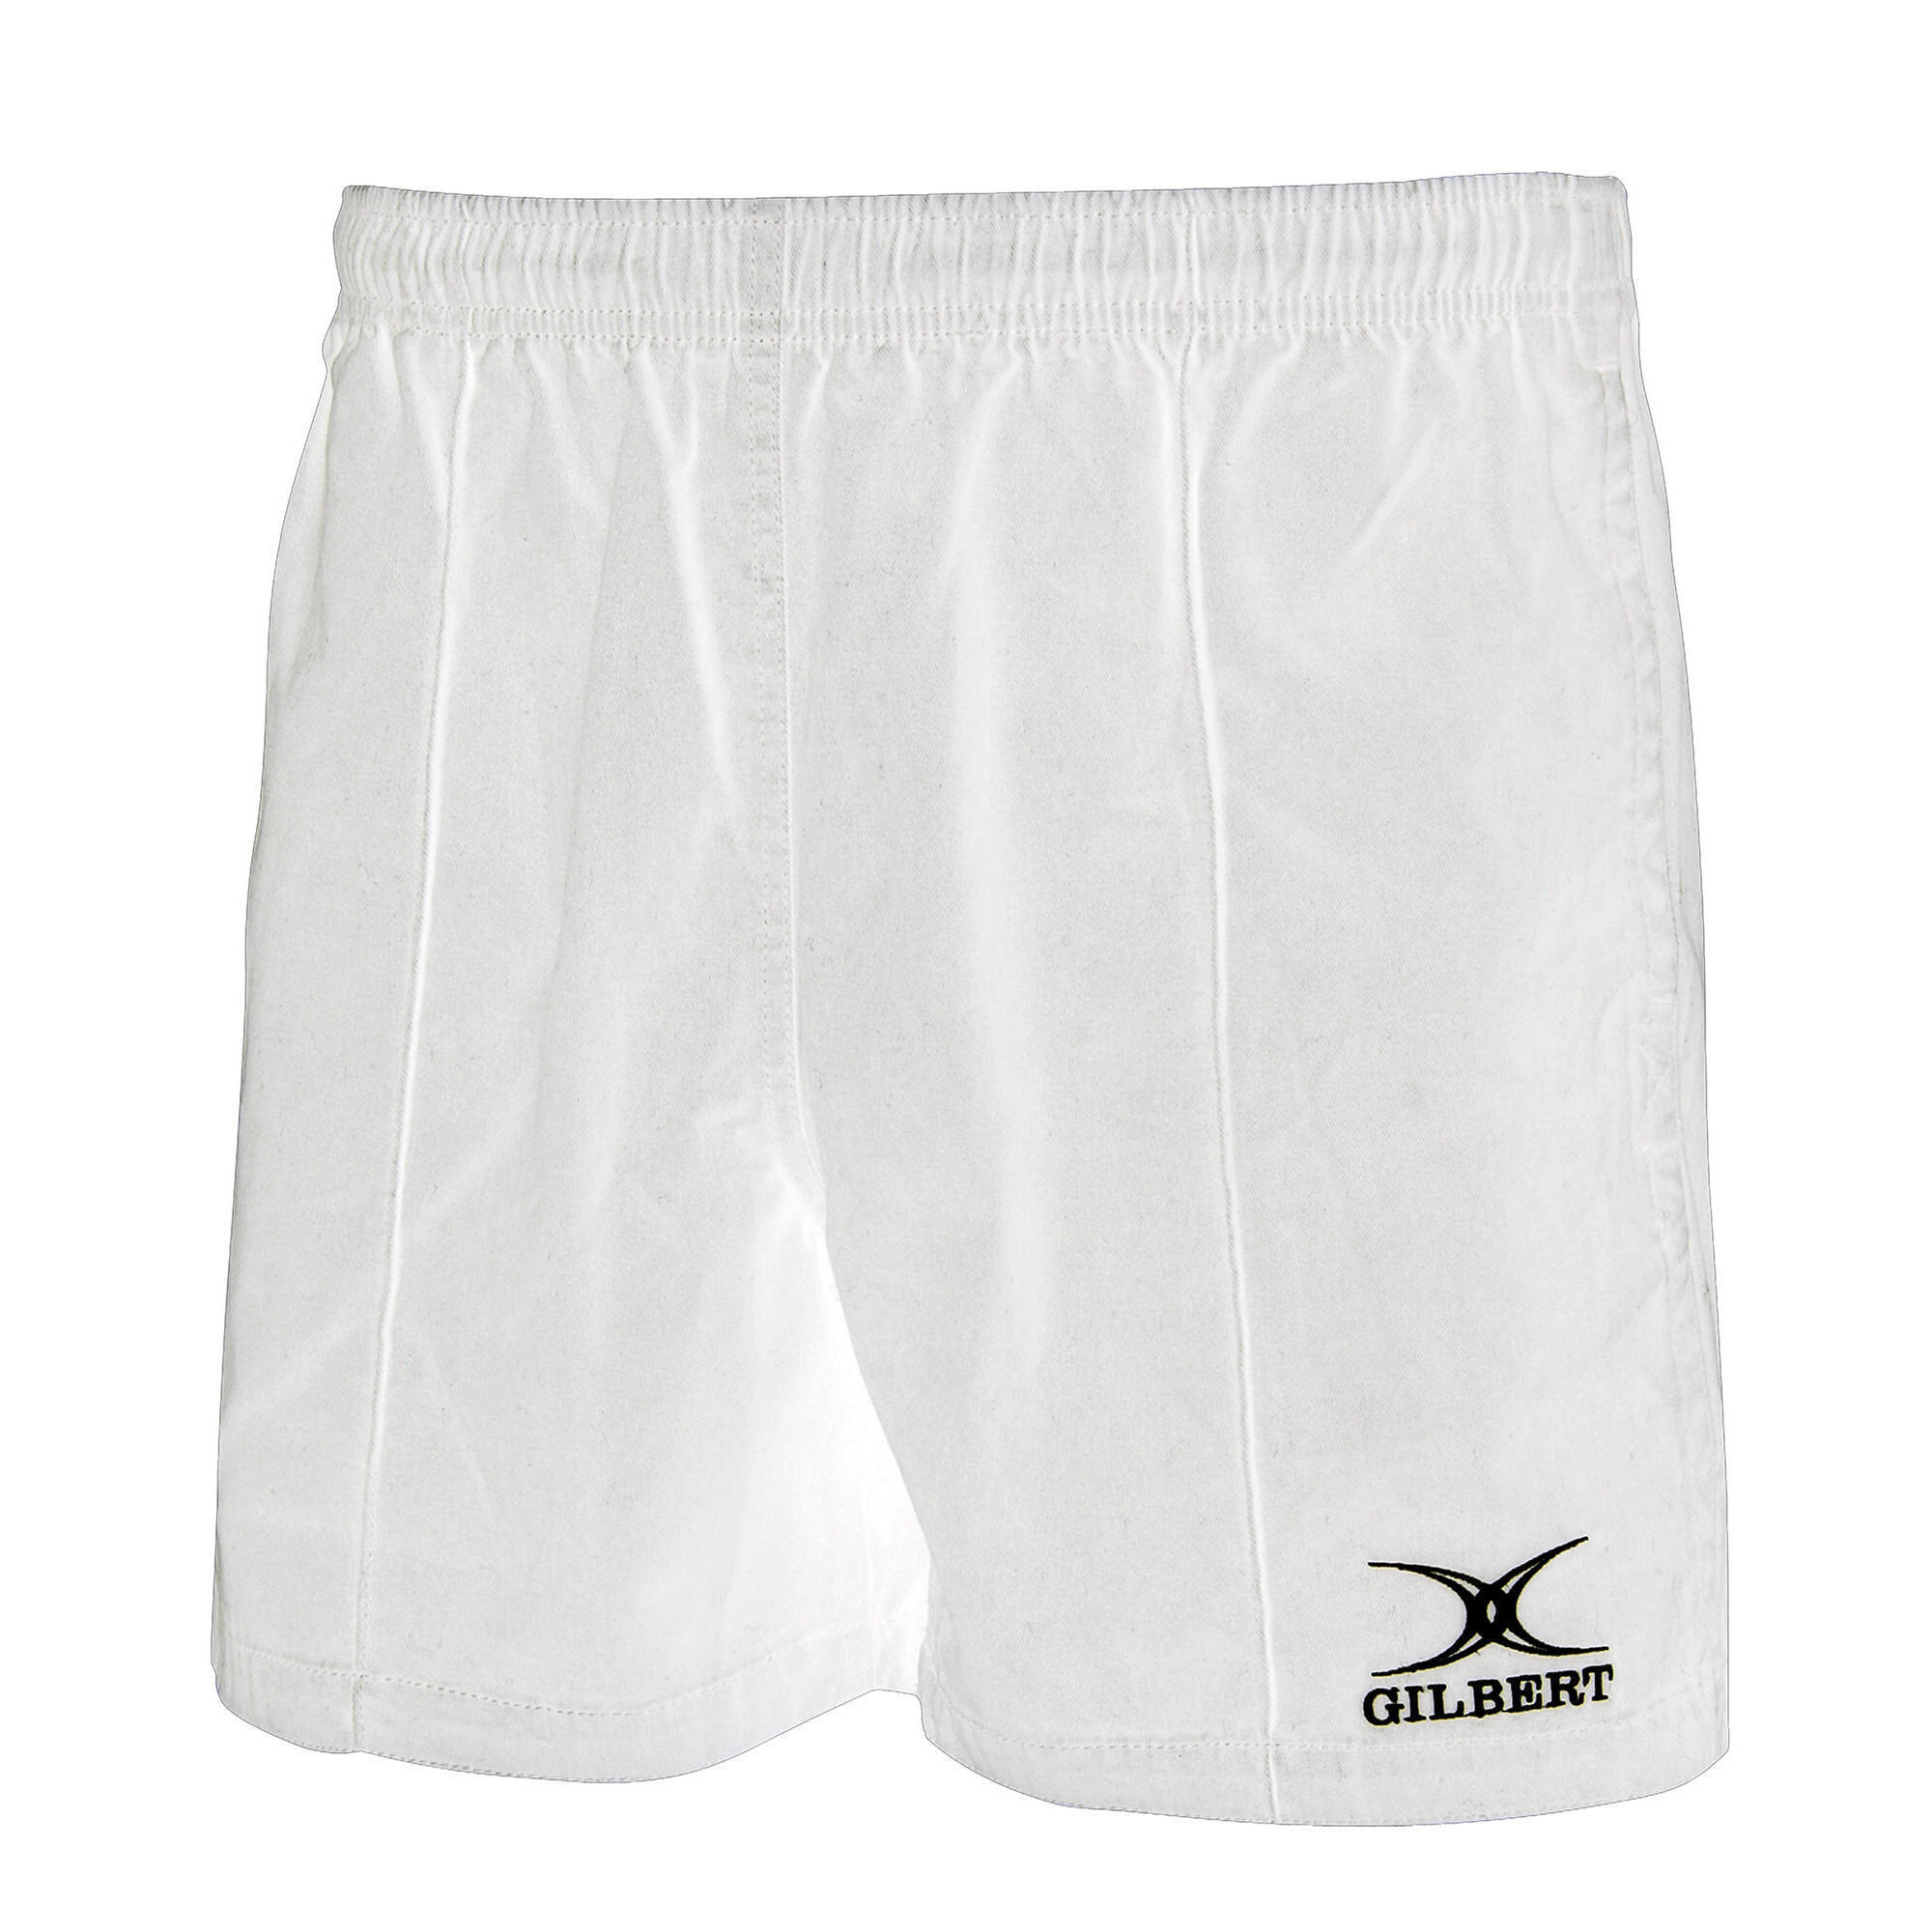 Kiwi Pro Shorts, White 1/3